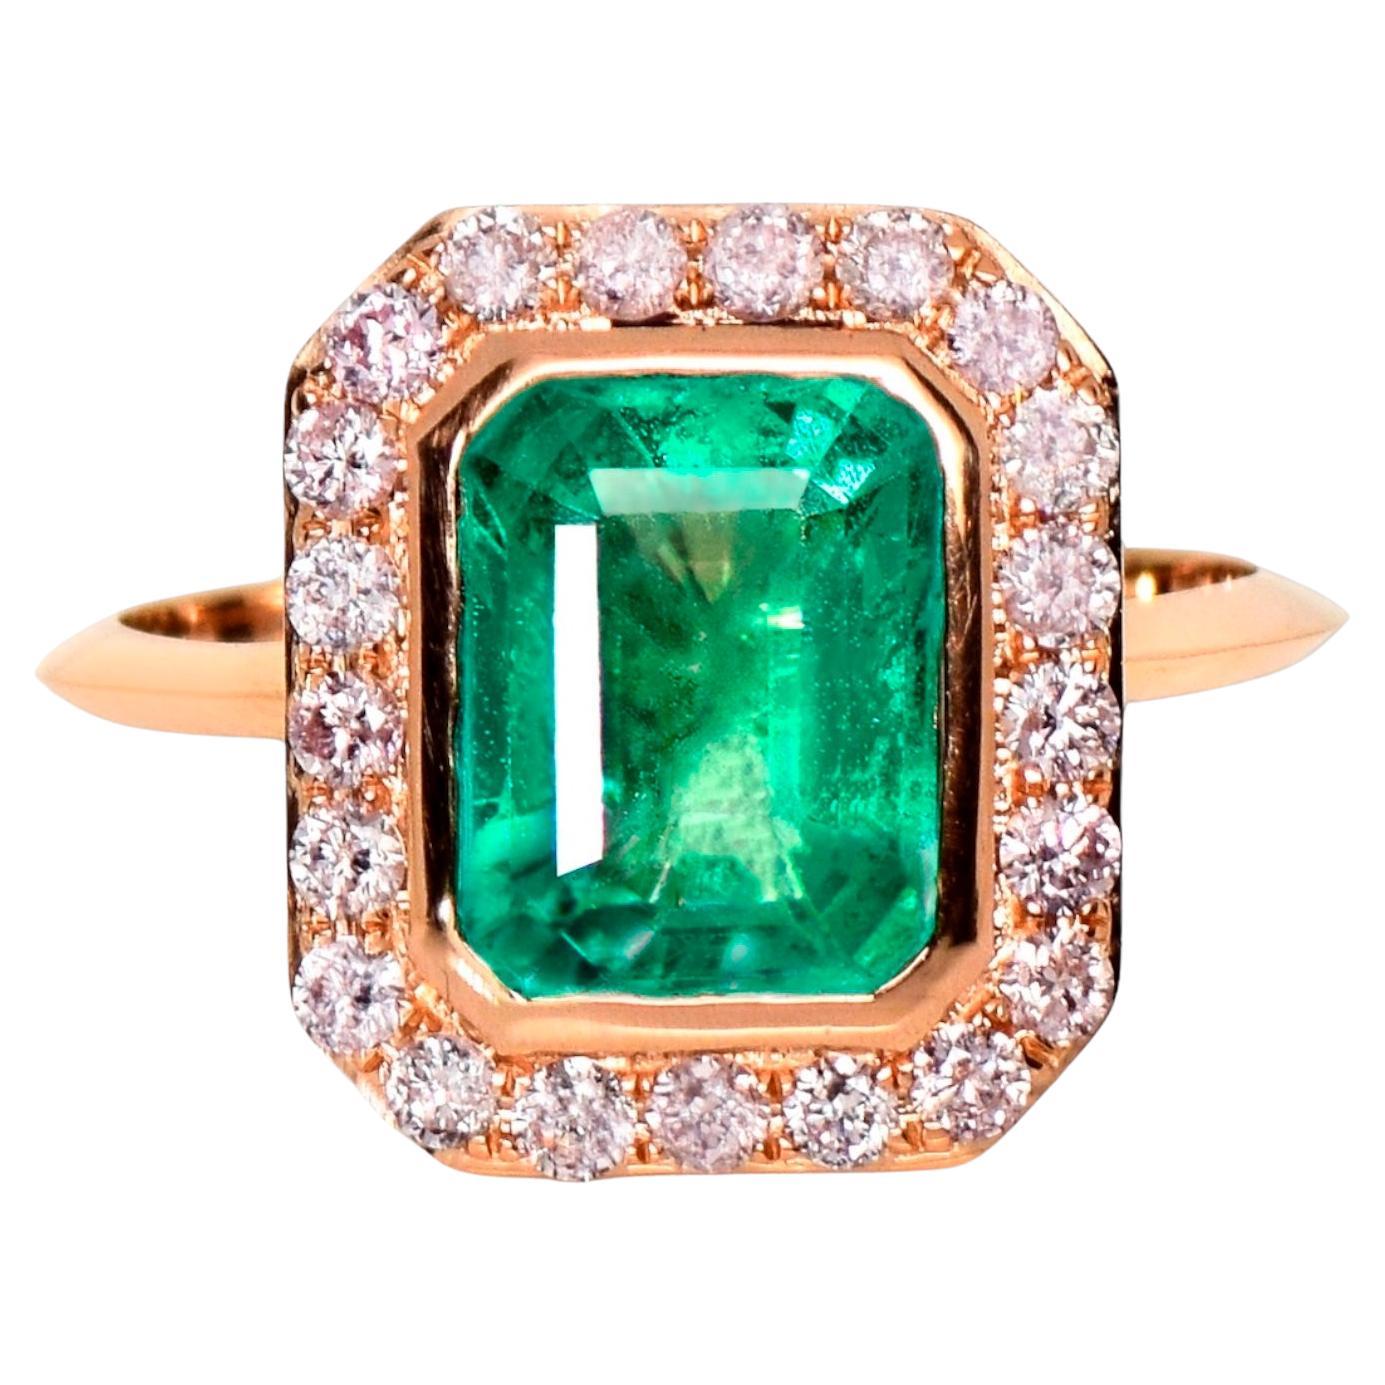 IGI 14K 2.30 ct Natural Green Emerald&Pink Diamond Engagement Ring